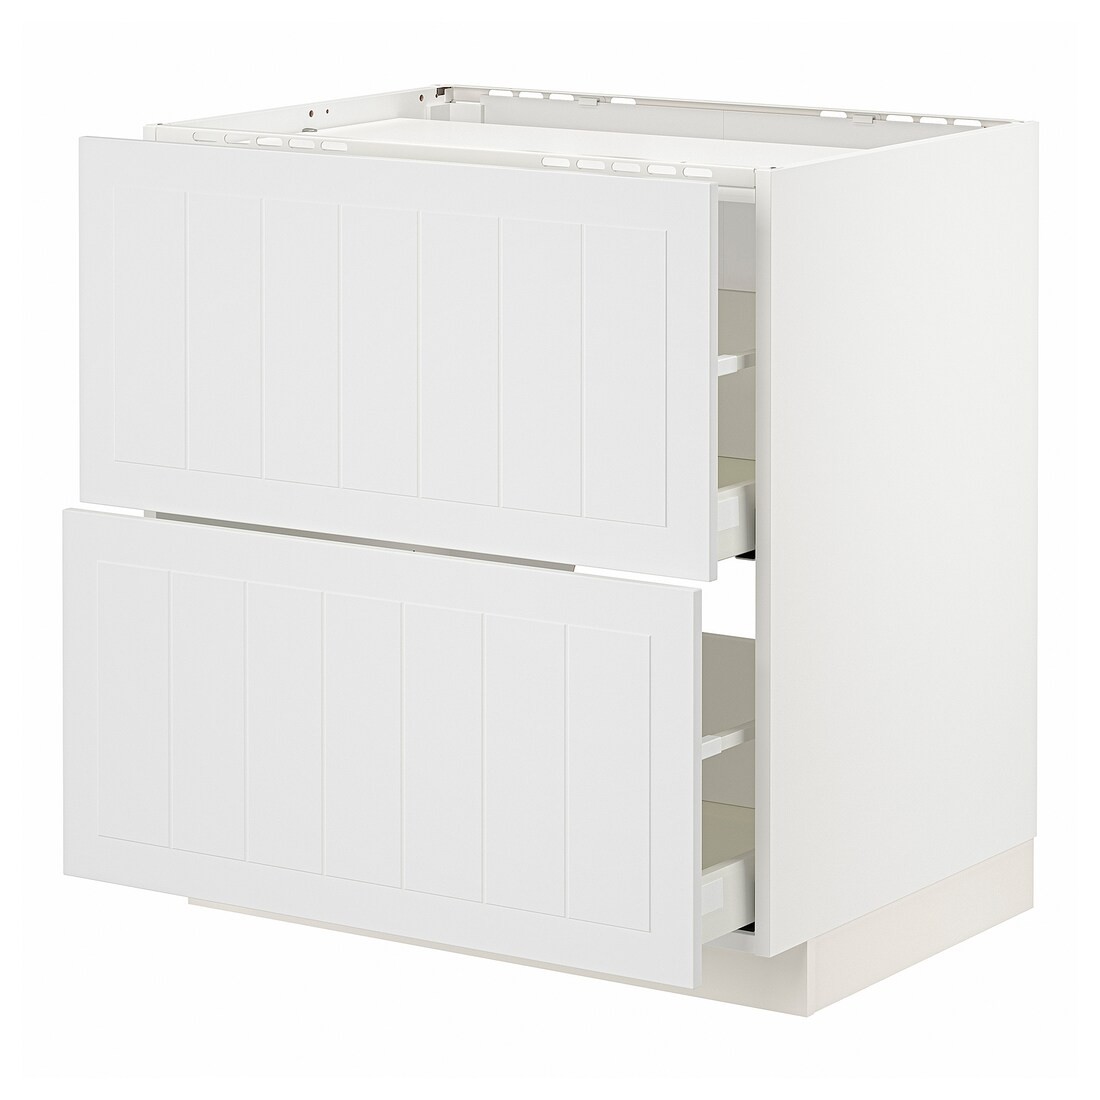 IKEA METOD МЕТОД / MAXIMERA МАКСІМЕРА Шафа для варильної панелі / 2 шухляди, білий / Stensund білий, 80x60 см 89409477 | 894.094.77